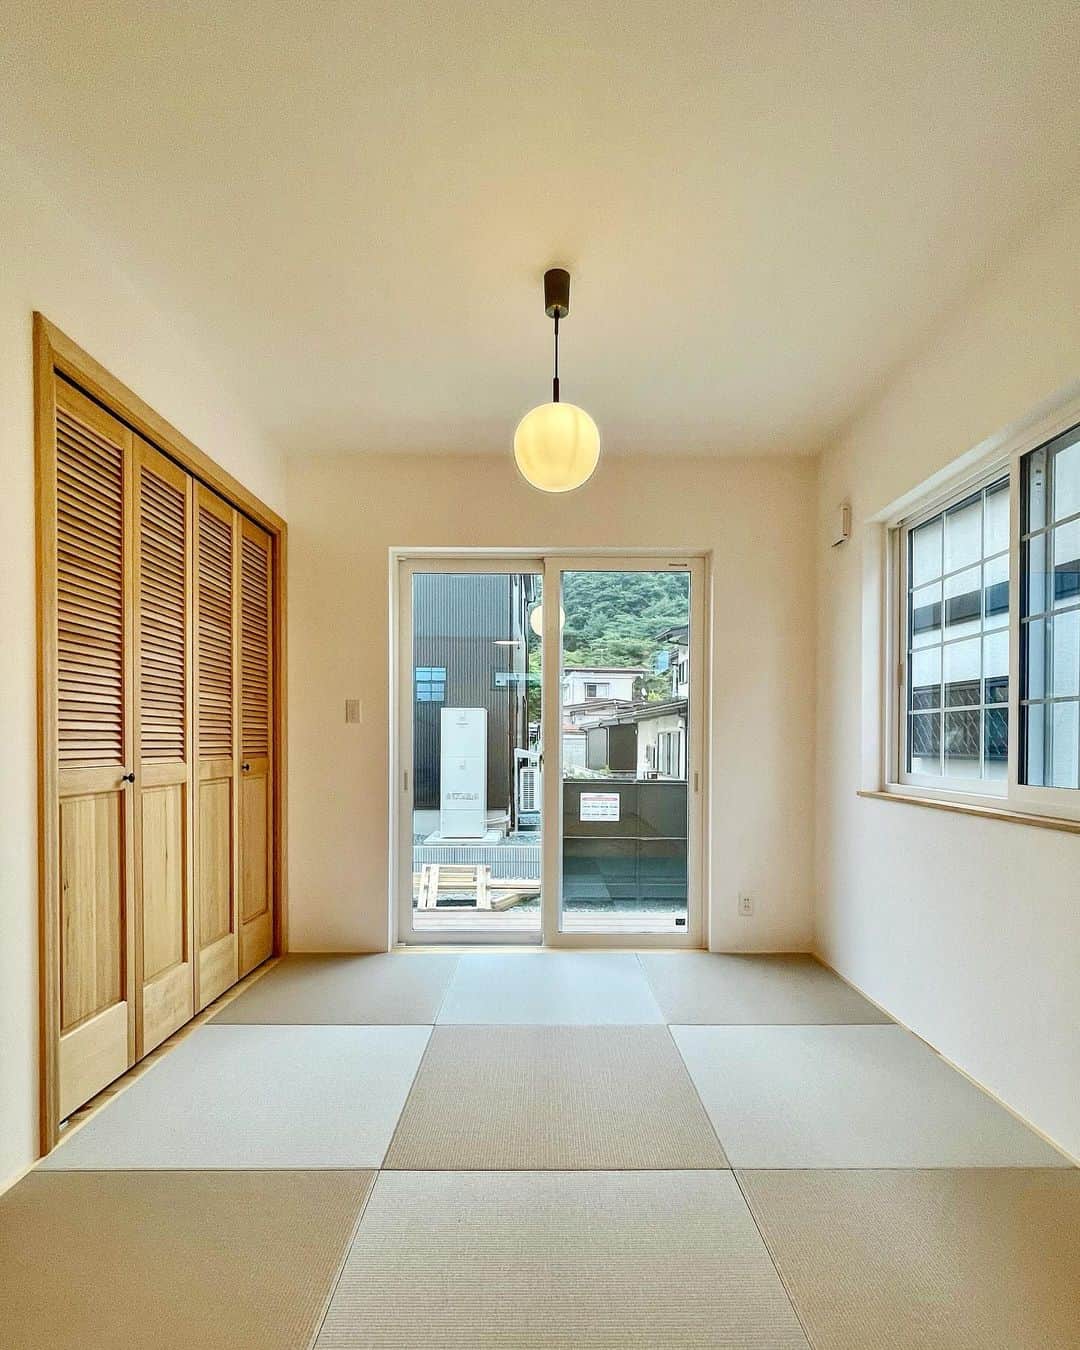 fukui-kensetsuのインスタグラム：「東根市H様邸の和室です。  琉球畳と無垢の収納扉を使用して、LDKの雰囲気に馴染むお部屋になりました✨  やっぱり畳は落ち着きますね〜。  #和室 #和室インテリア #琉球畳 #輸入ドア #収納折戸 #掃き出し窓 #自然塗料 #自然塗料リボス #自然素材の家 #自然素材の家づくり #マイホーム #東根市  +++--------------------+++  山形暮らしの家づくり  #福井建設#山形市#工務店#注文住宅#山形注文住宅#山形の工務店#山形住宅会社  山形の風土に合った注文住宅を建設しています。  ↓プロフィール↓ @fukui_kensetsu  ↓現場のことや日常をご紹介するアカウント↓ @fukui_kensetsu_pr  お問い合わせなど、お気軽にDMしてください♪ +++--------------------+++」